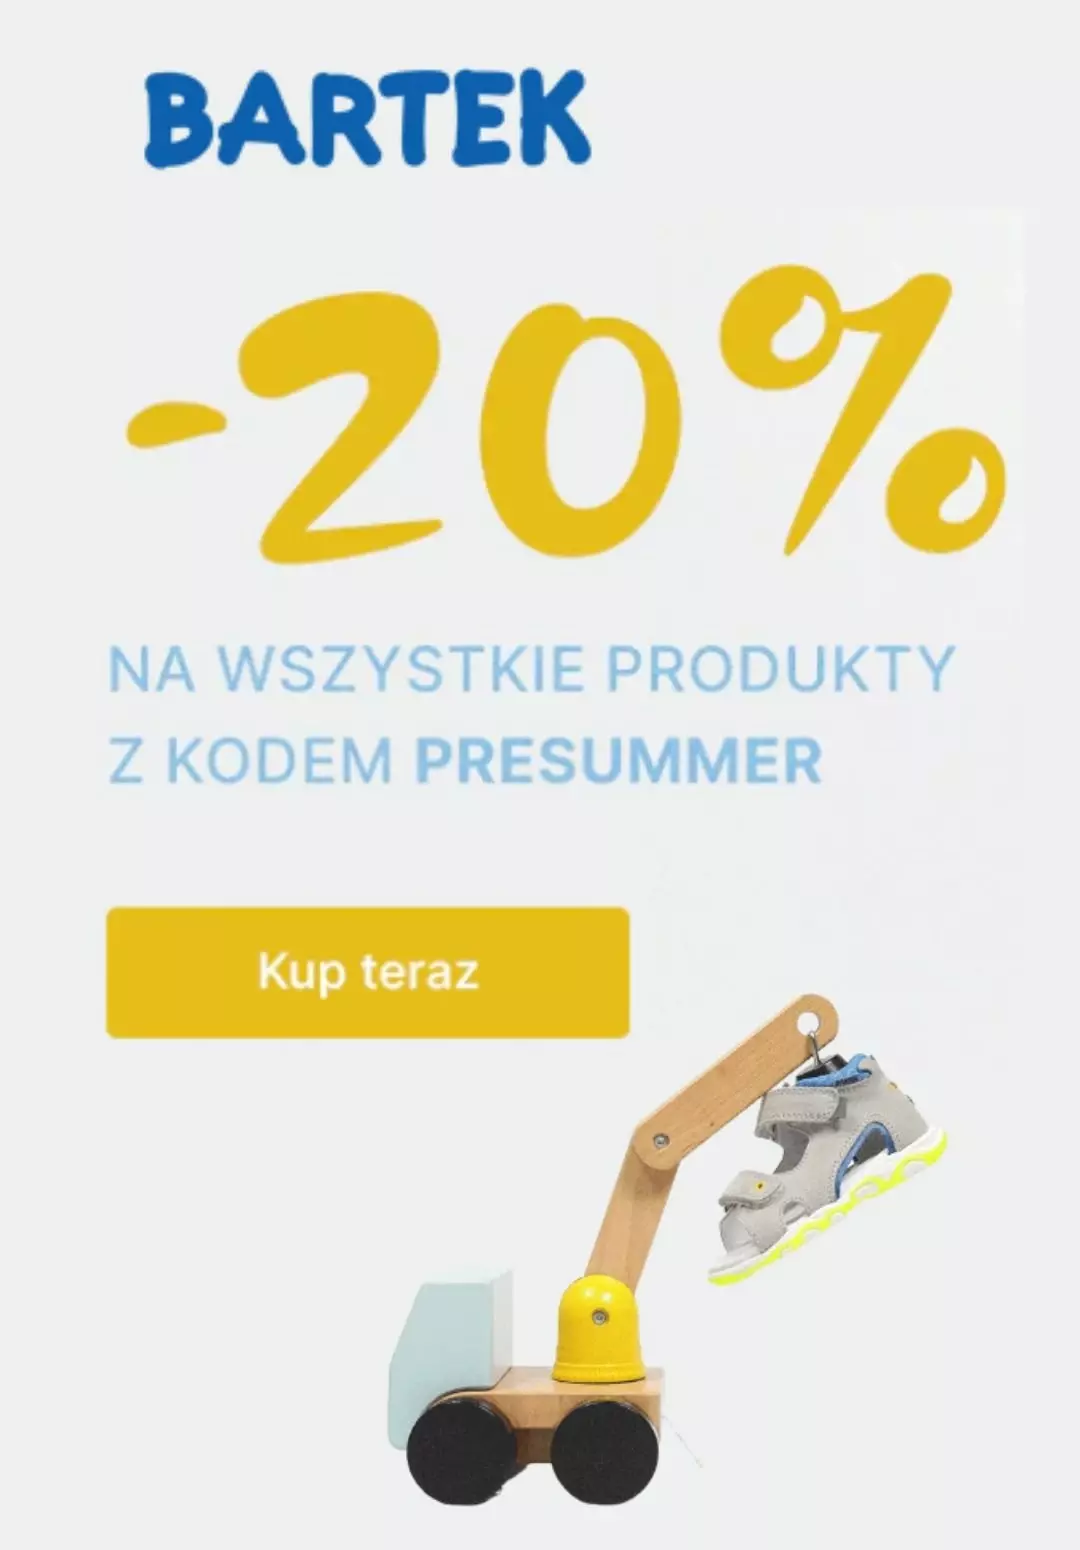 Bartek - gazetka promocyjna -20% na wszystkie produkty od piątku 02.06 do wtorku 20.06